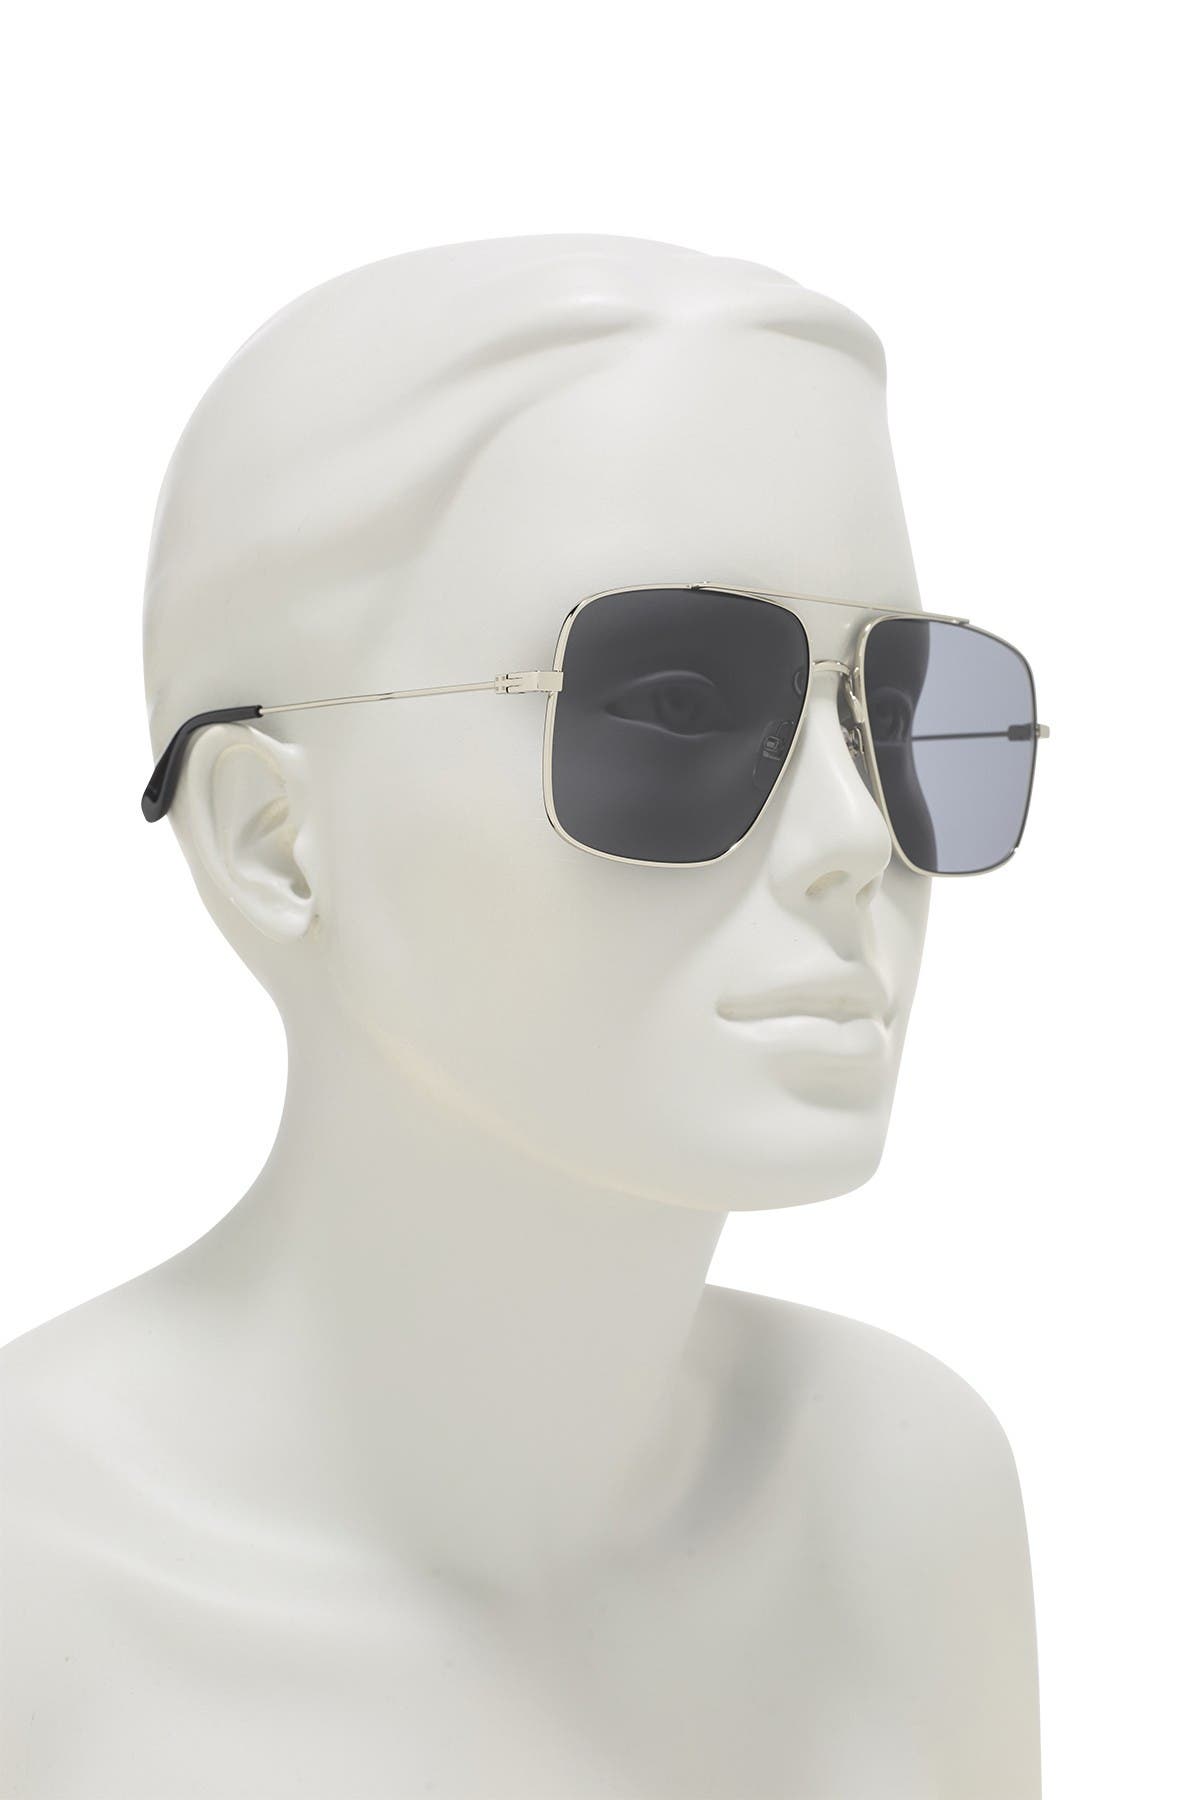 givenchy square aviator sunglasses